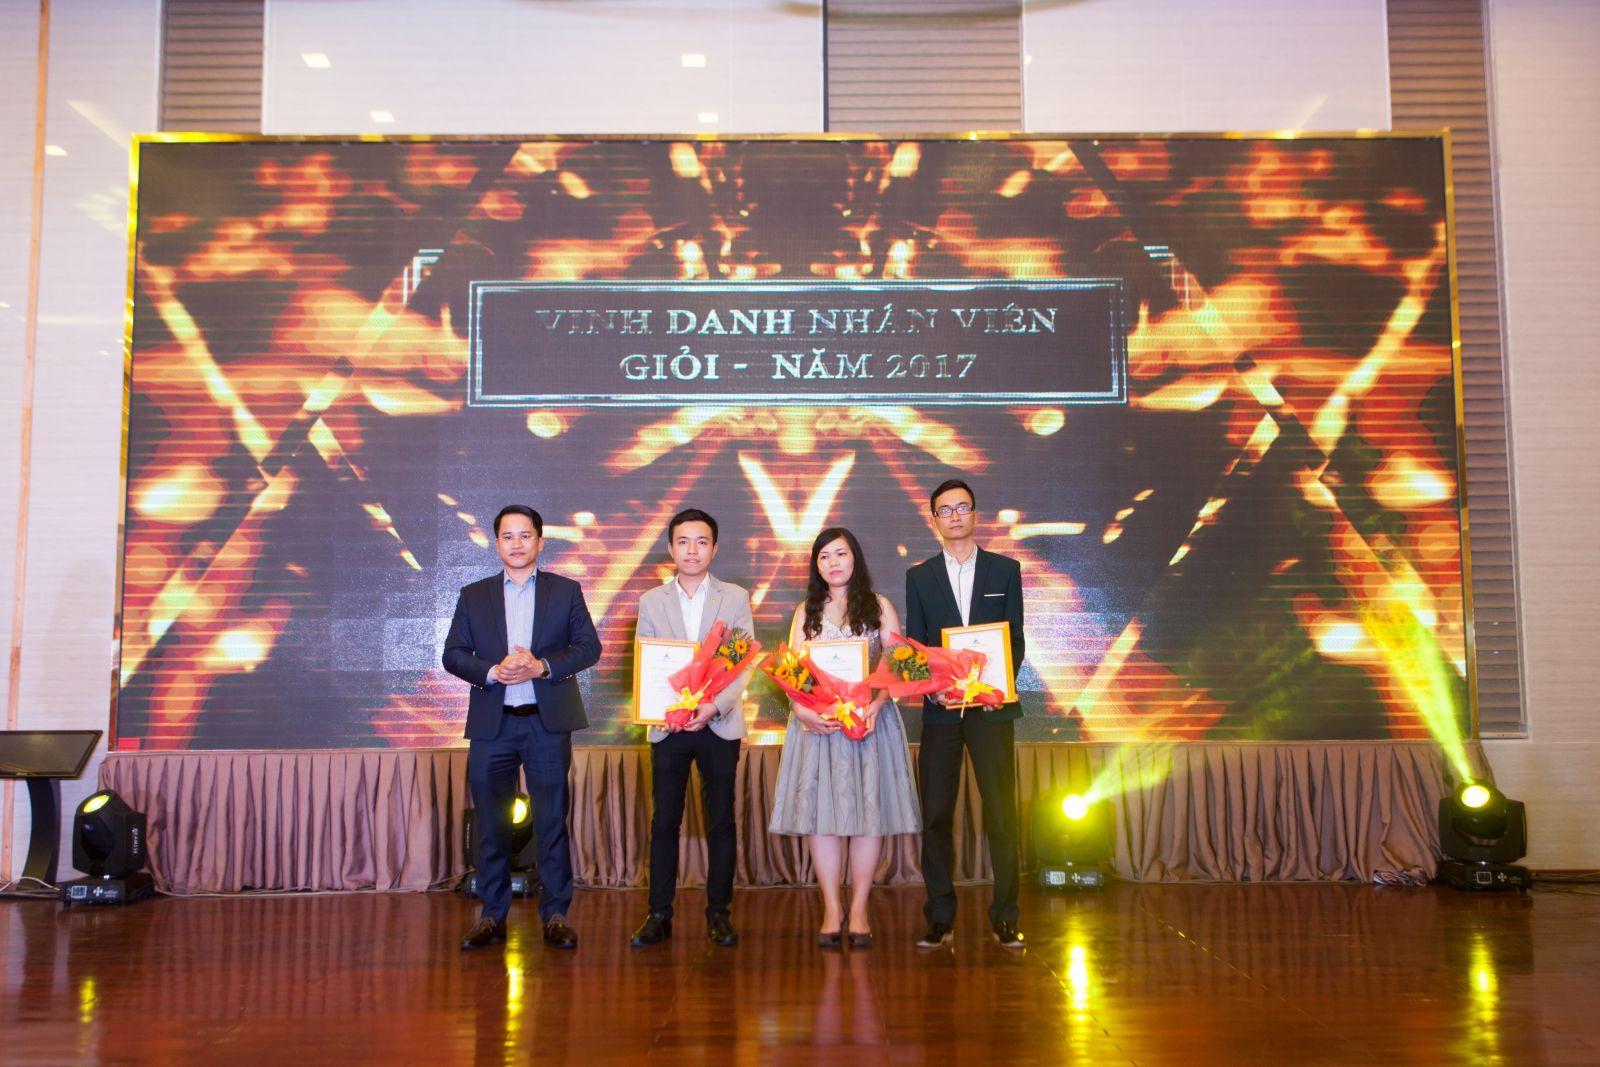 ĐẤT XANH ĐÀ NẴNG – YEAR END PARTY 2017 - Viet Nam Smart City